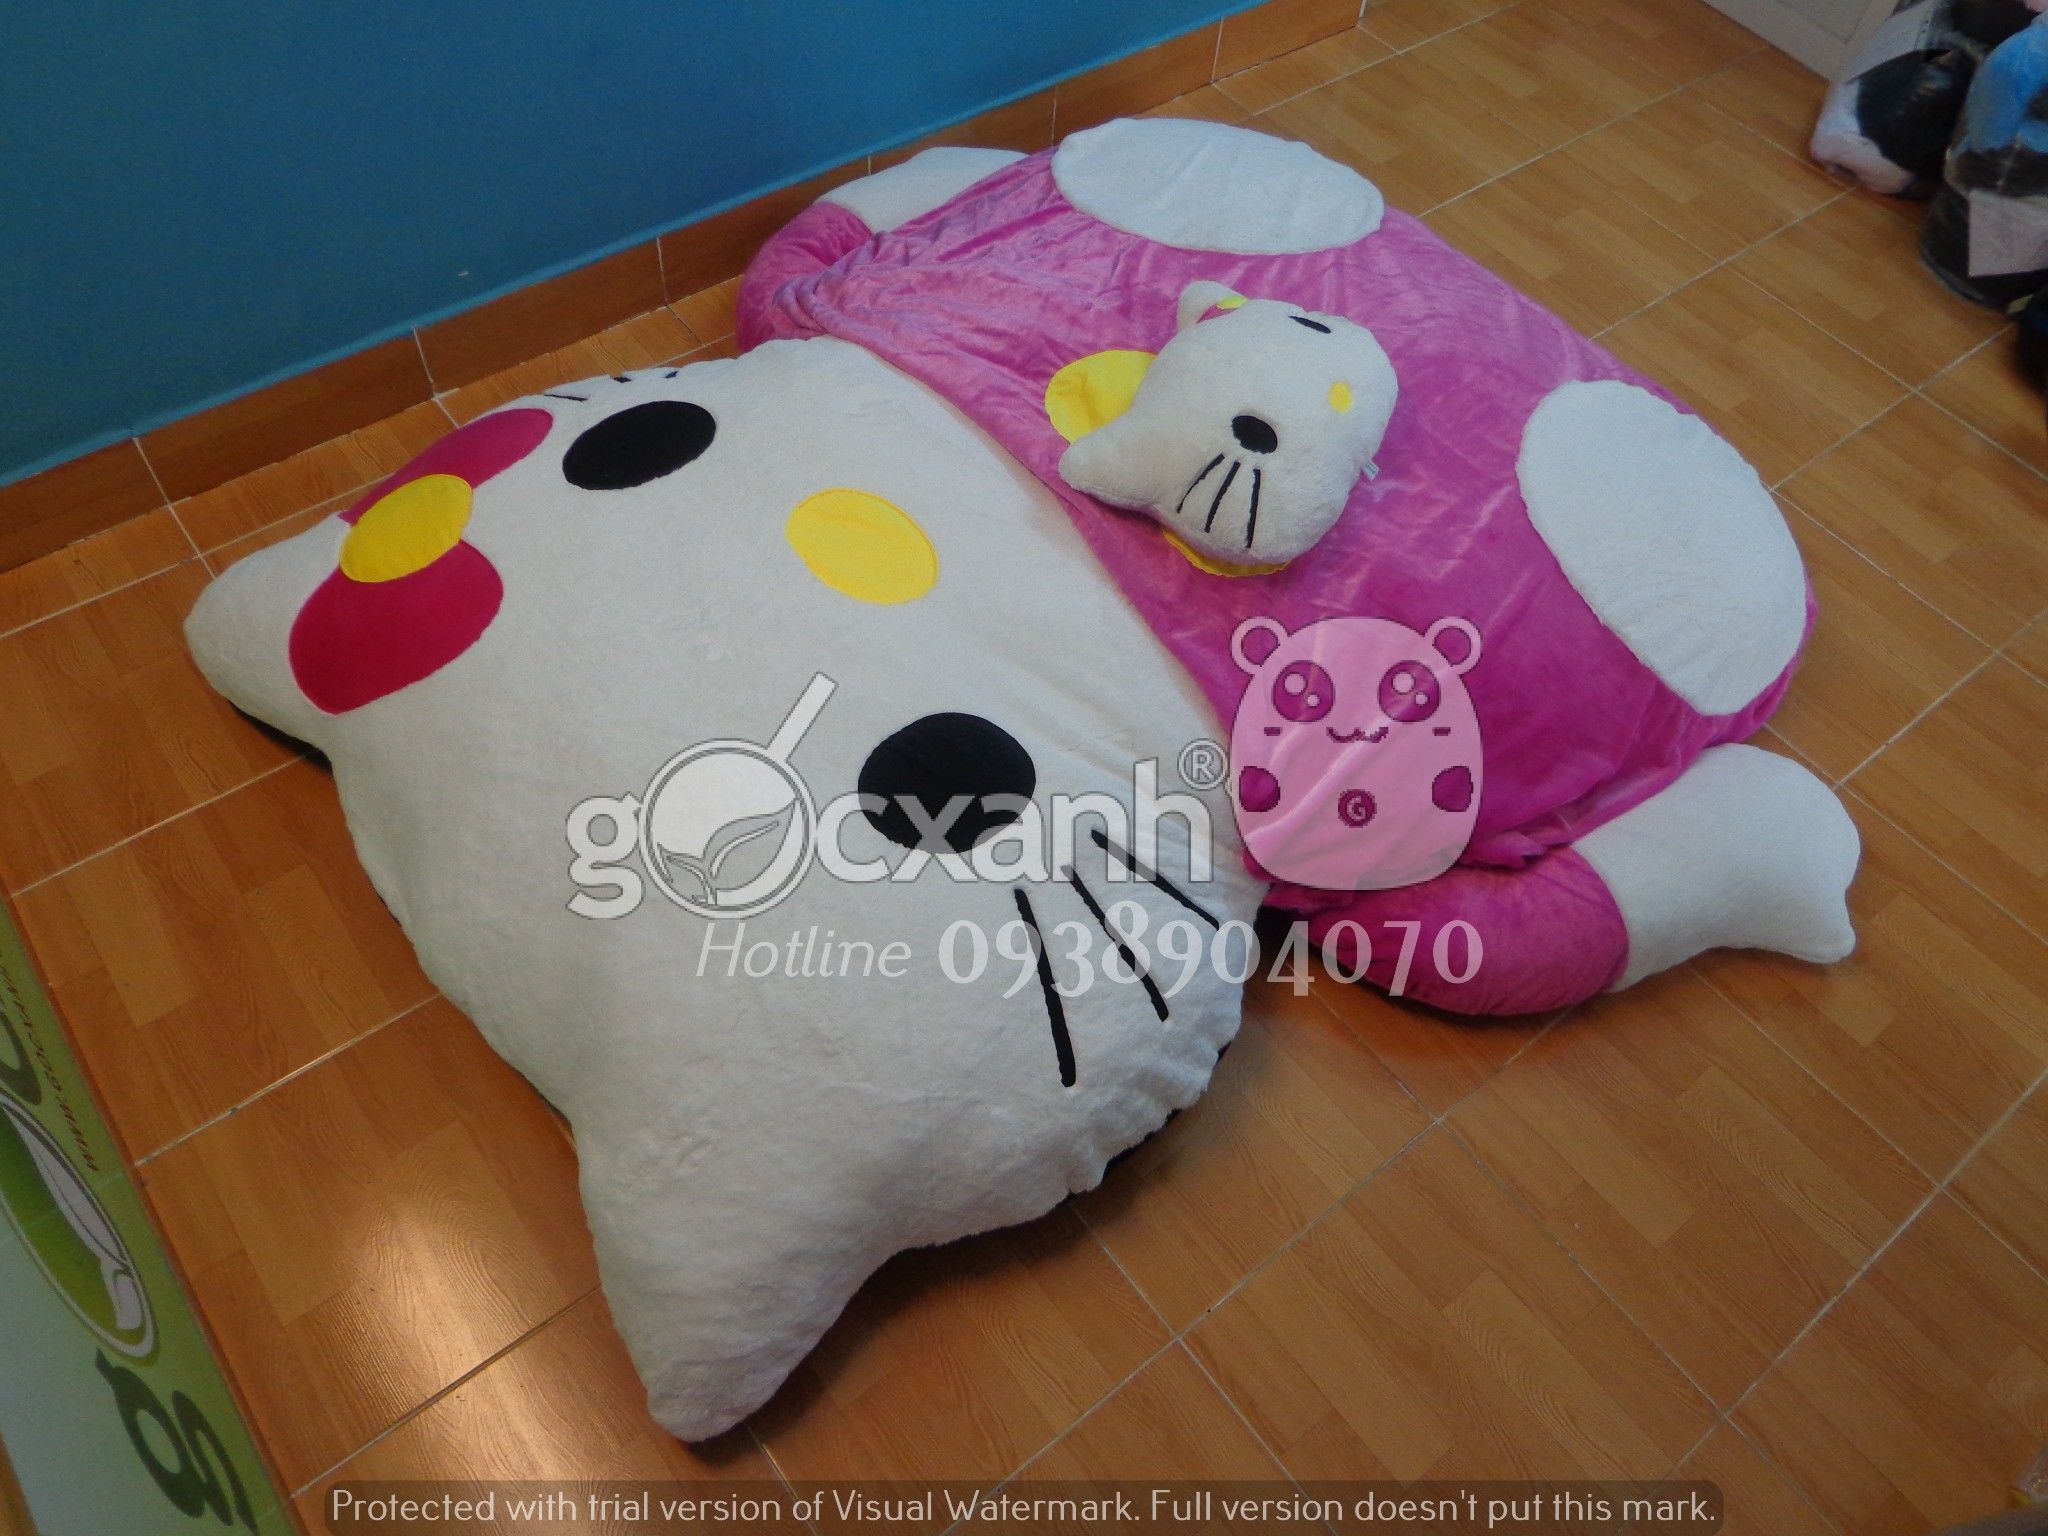 Nệm Hello Kitty mền nhung hồng (1.6 x 2.1m)